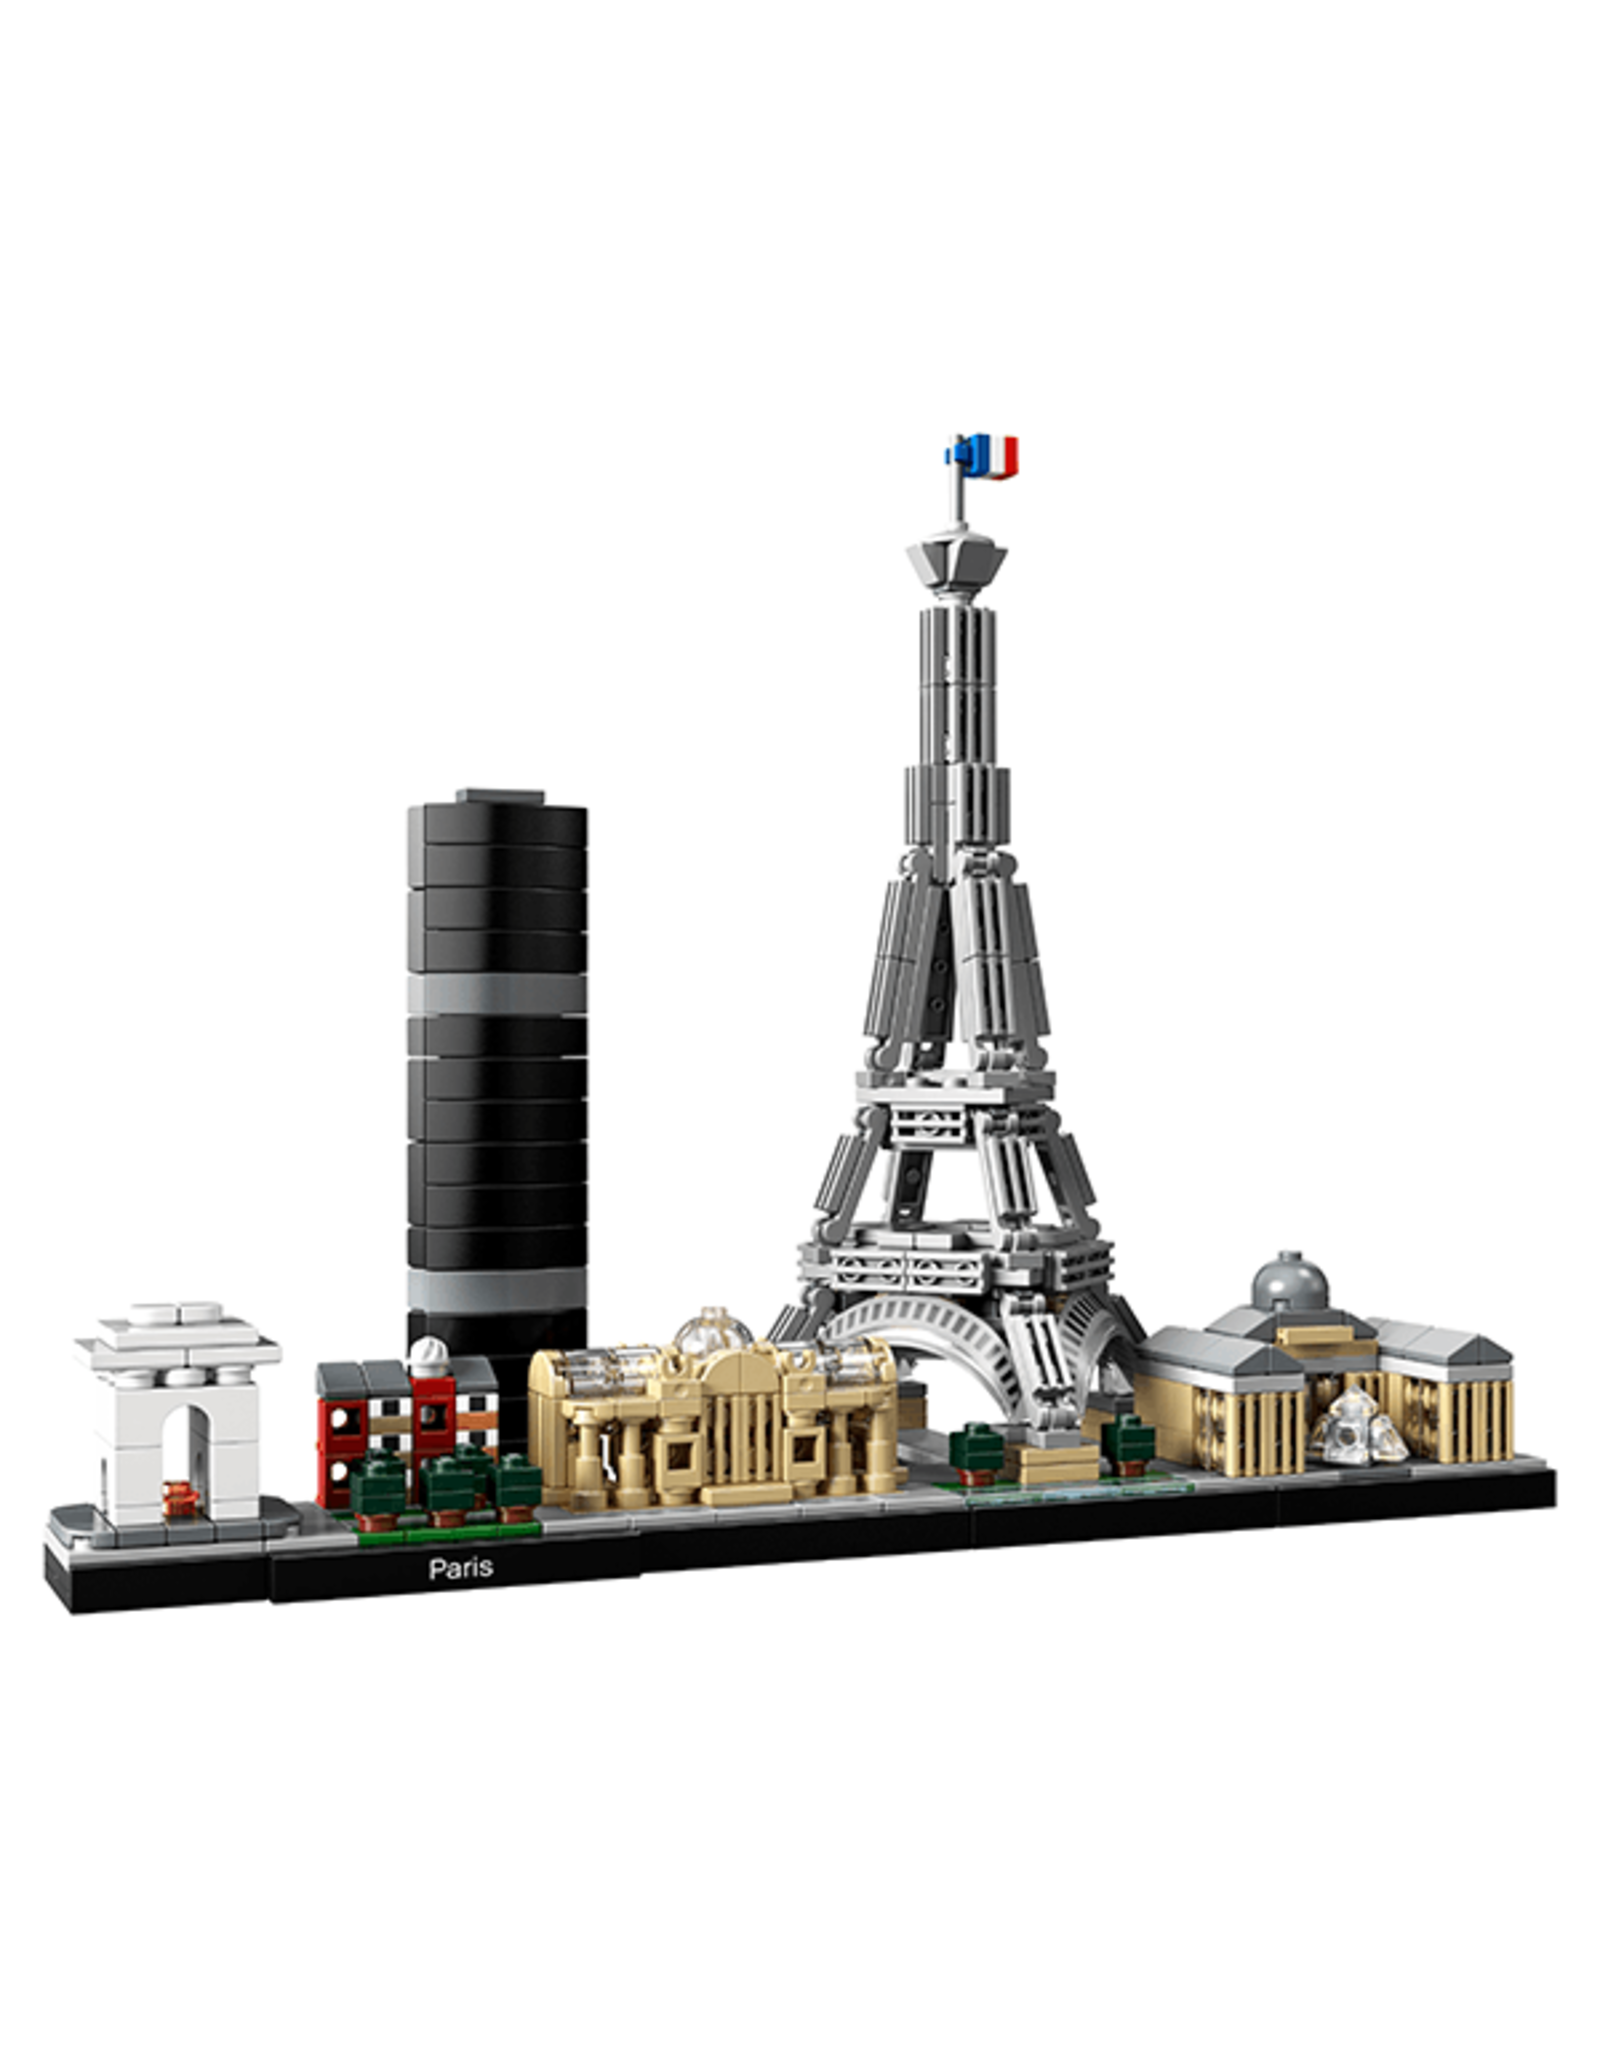 LEGO Architecture - 21044 - Paris